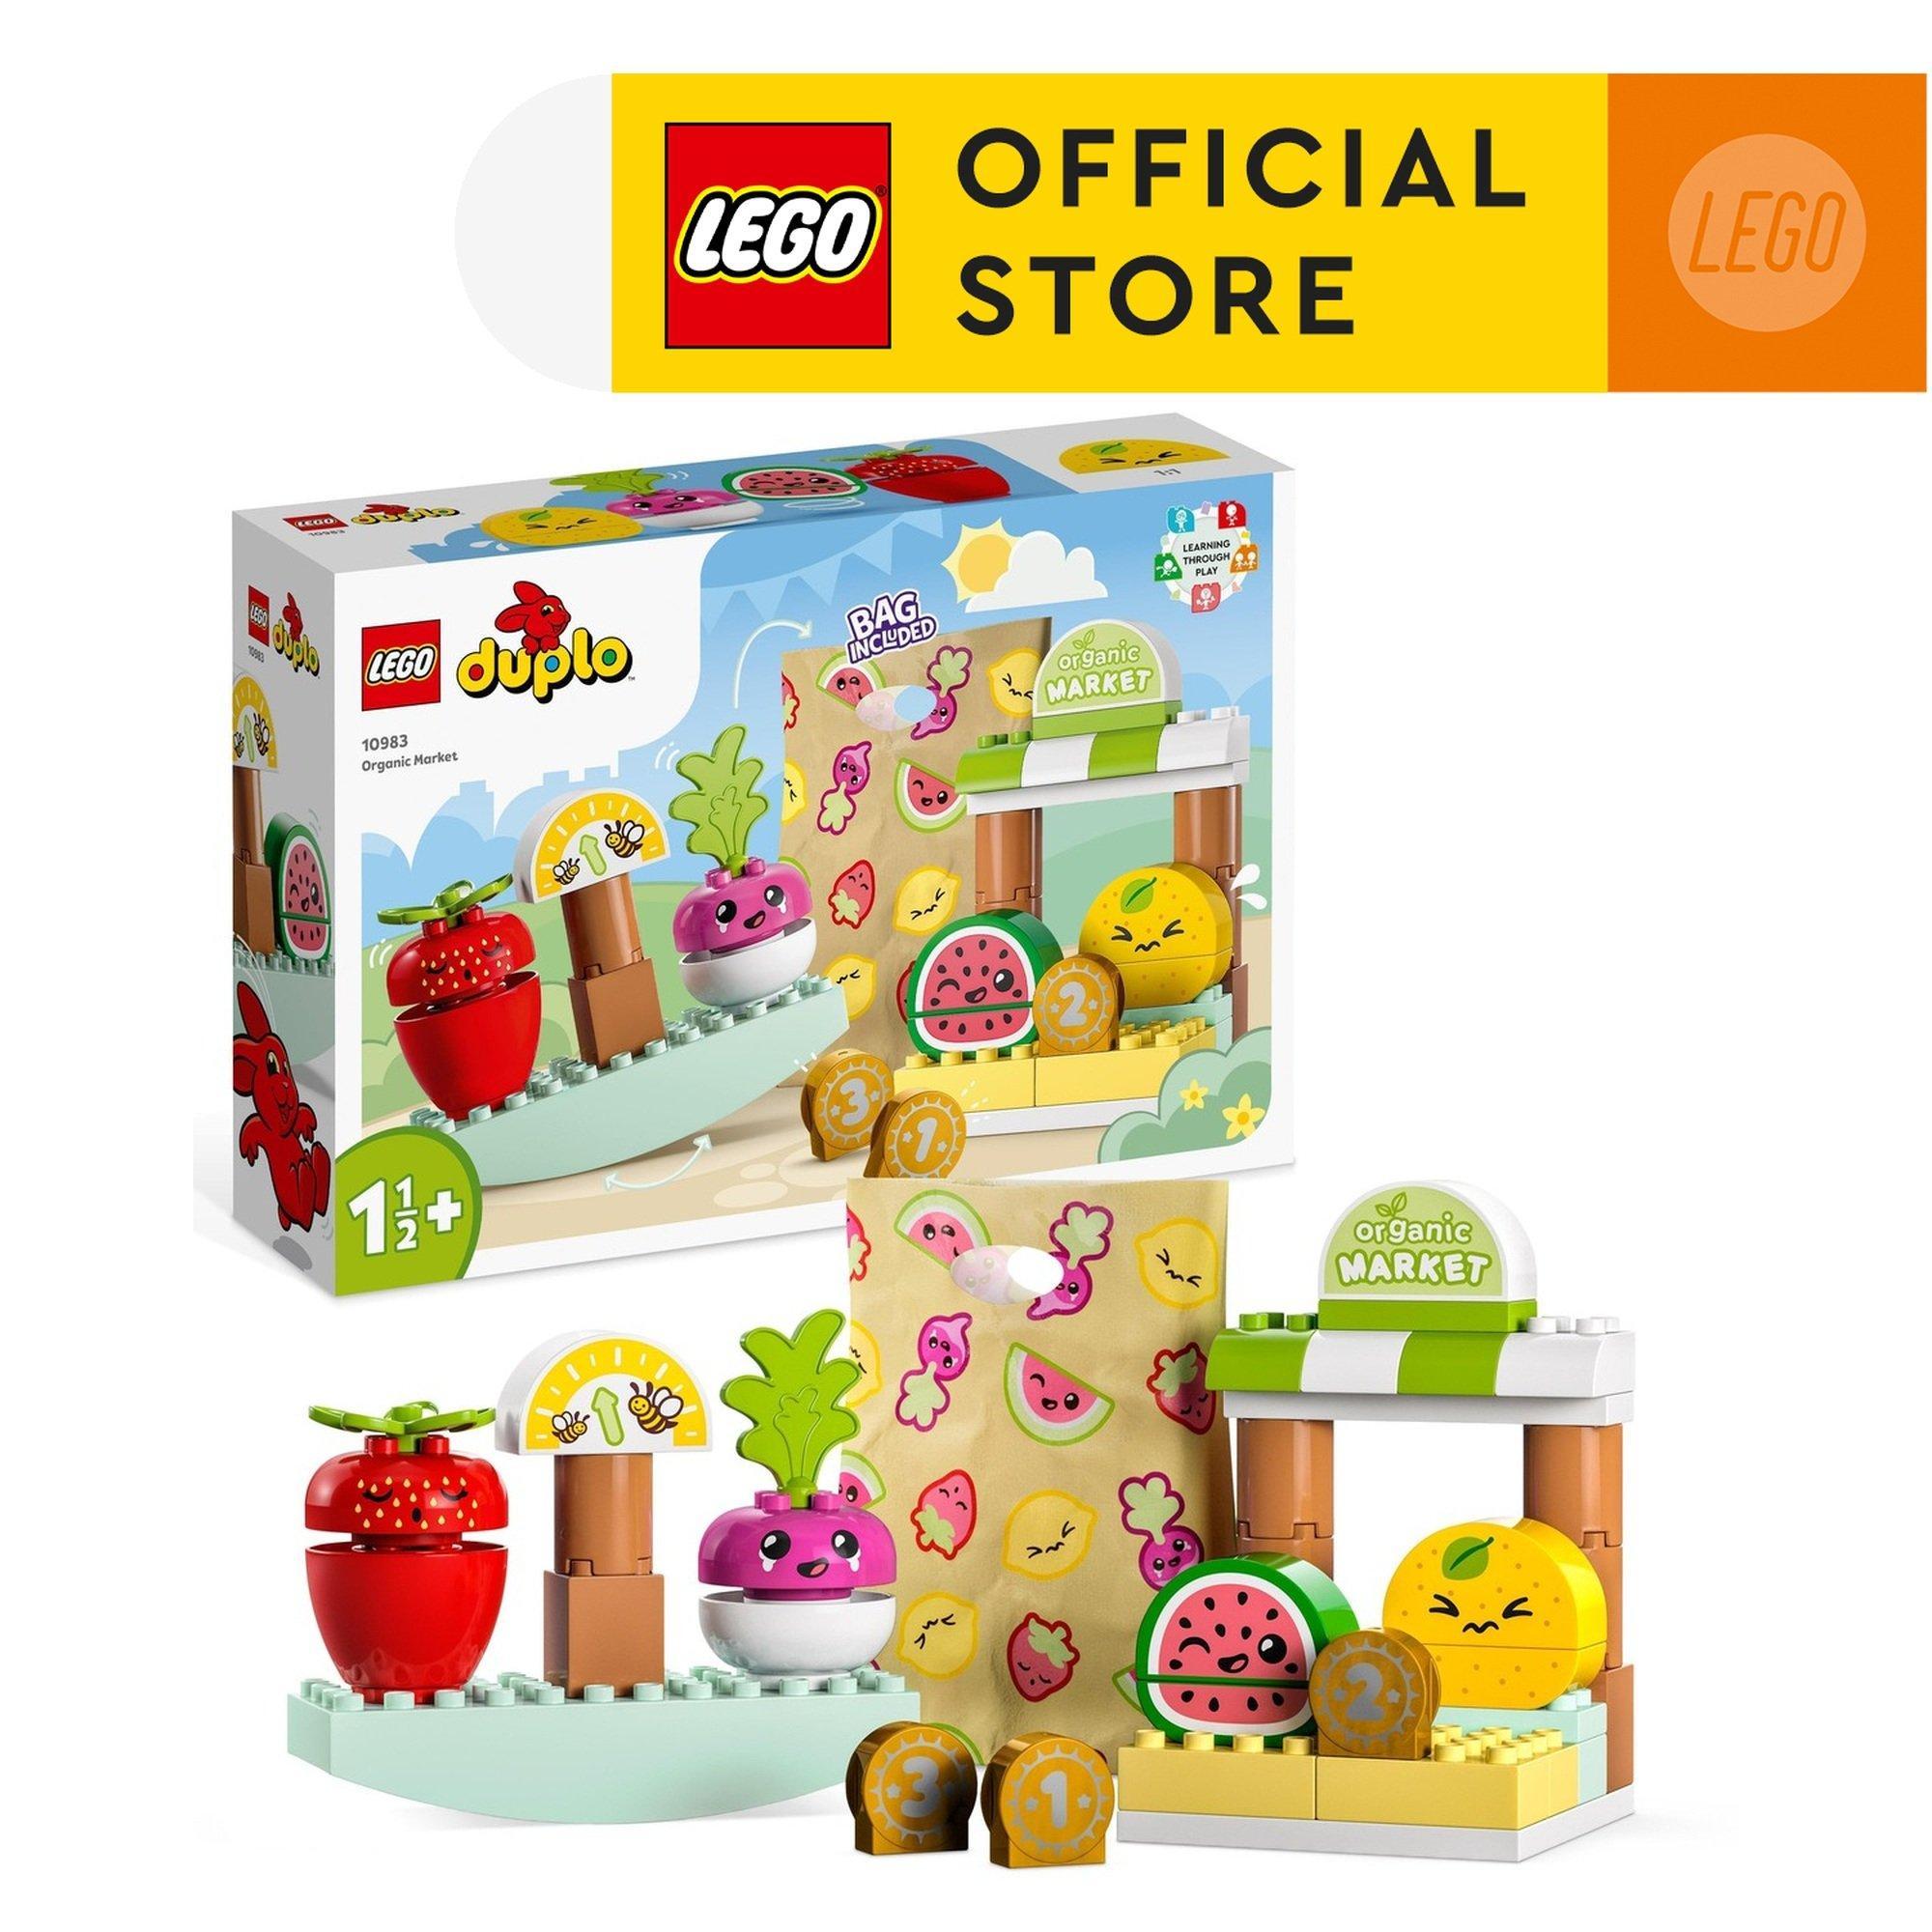 LEGO Duplo 10983 Khu Chợ Rau Củ Hữu Cơ (40 chi tiết)